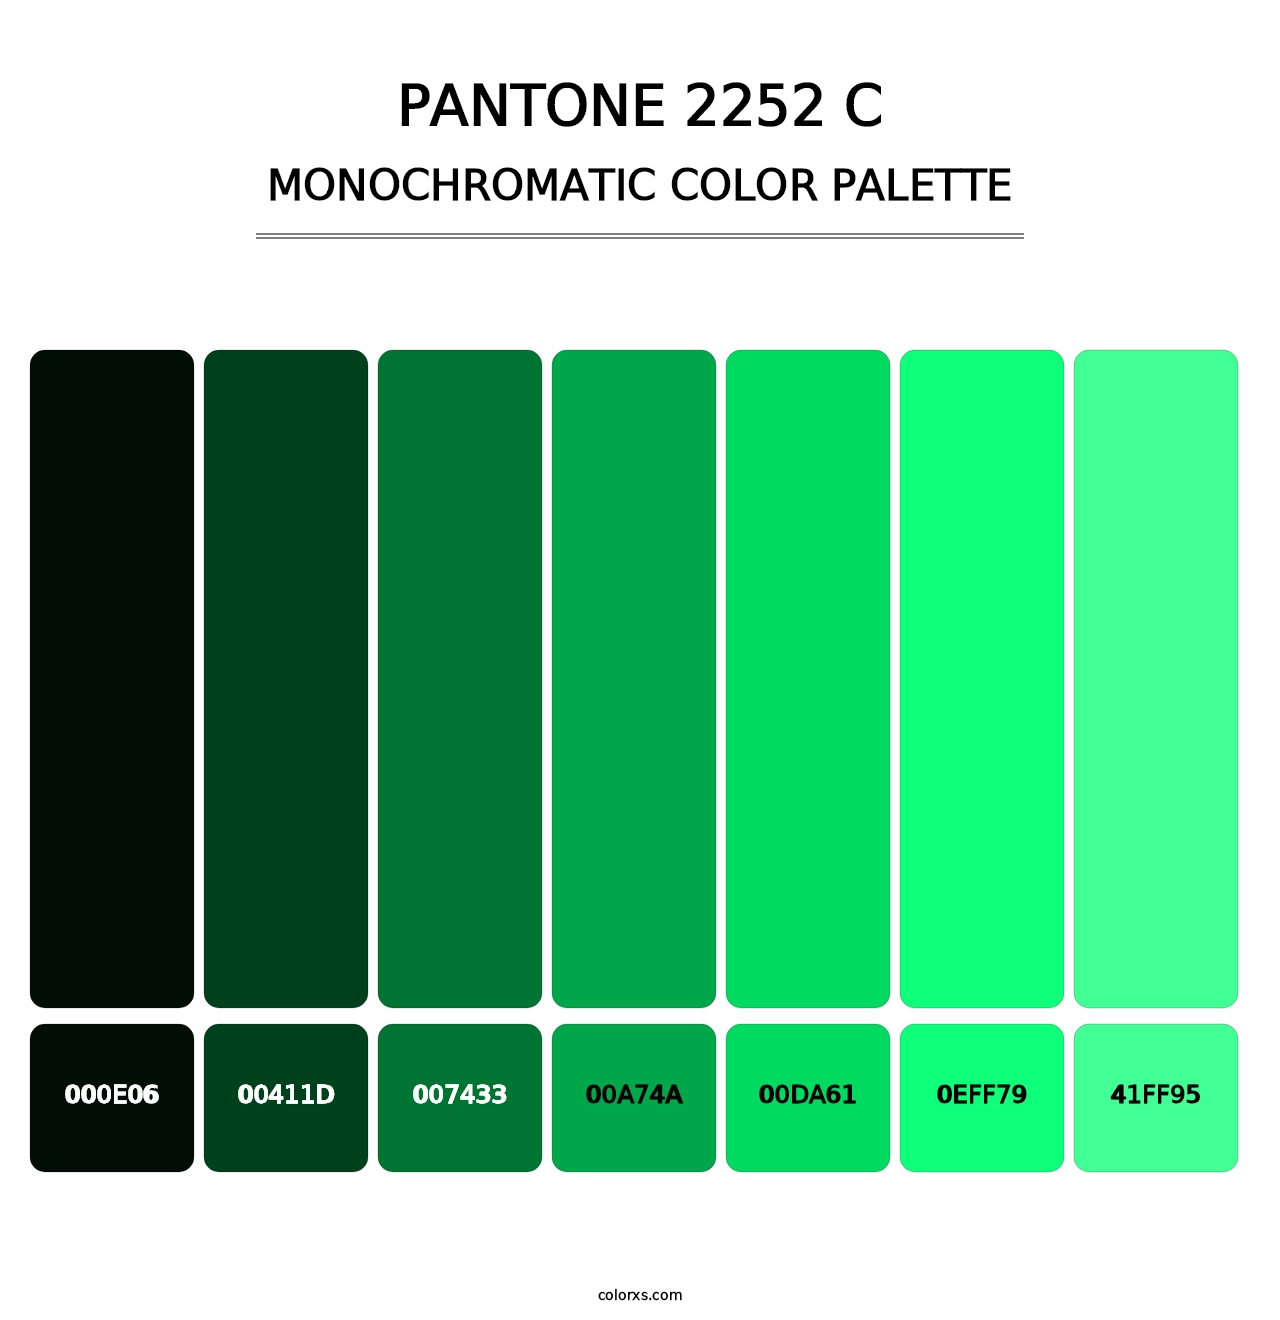 PANTONE 2252 C - Monochromatic Color Palette